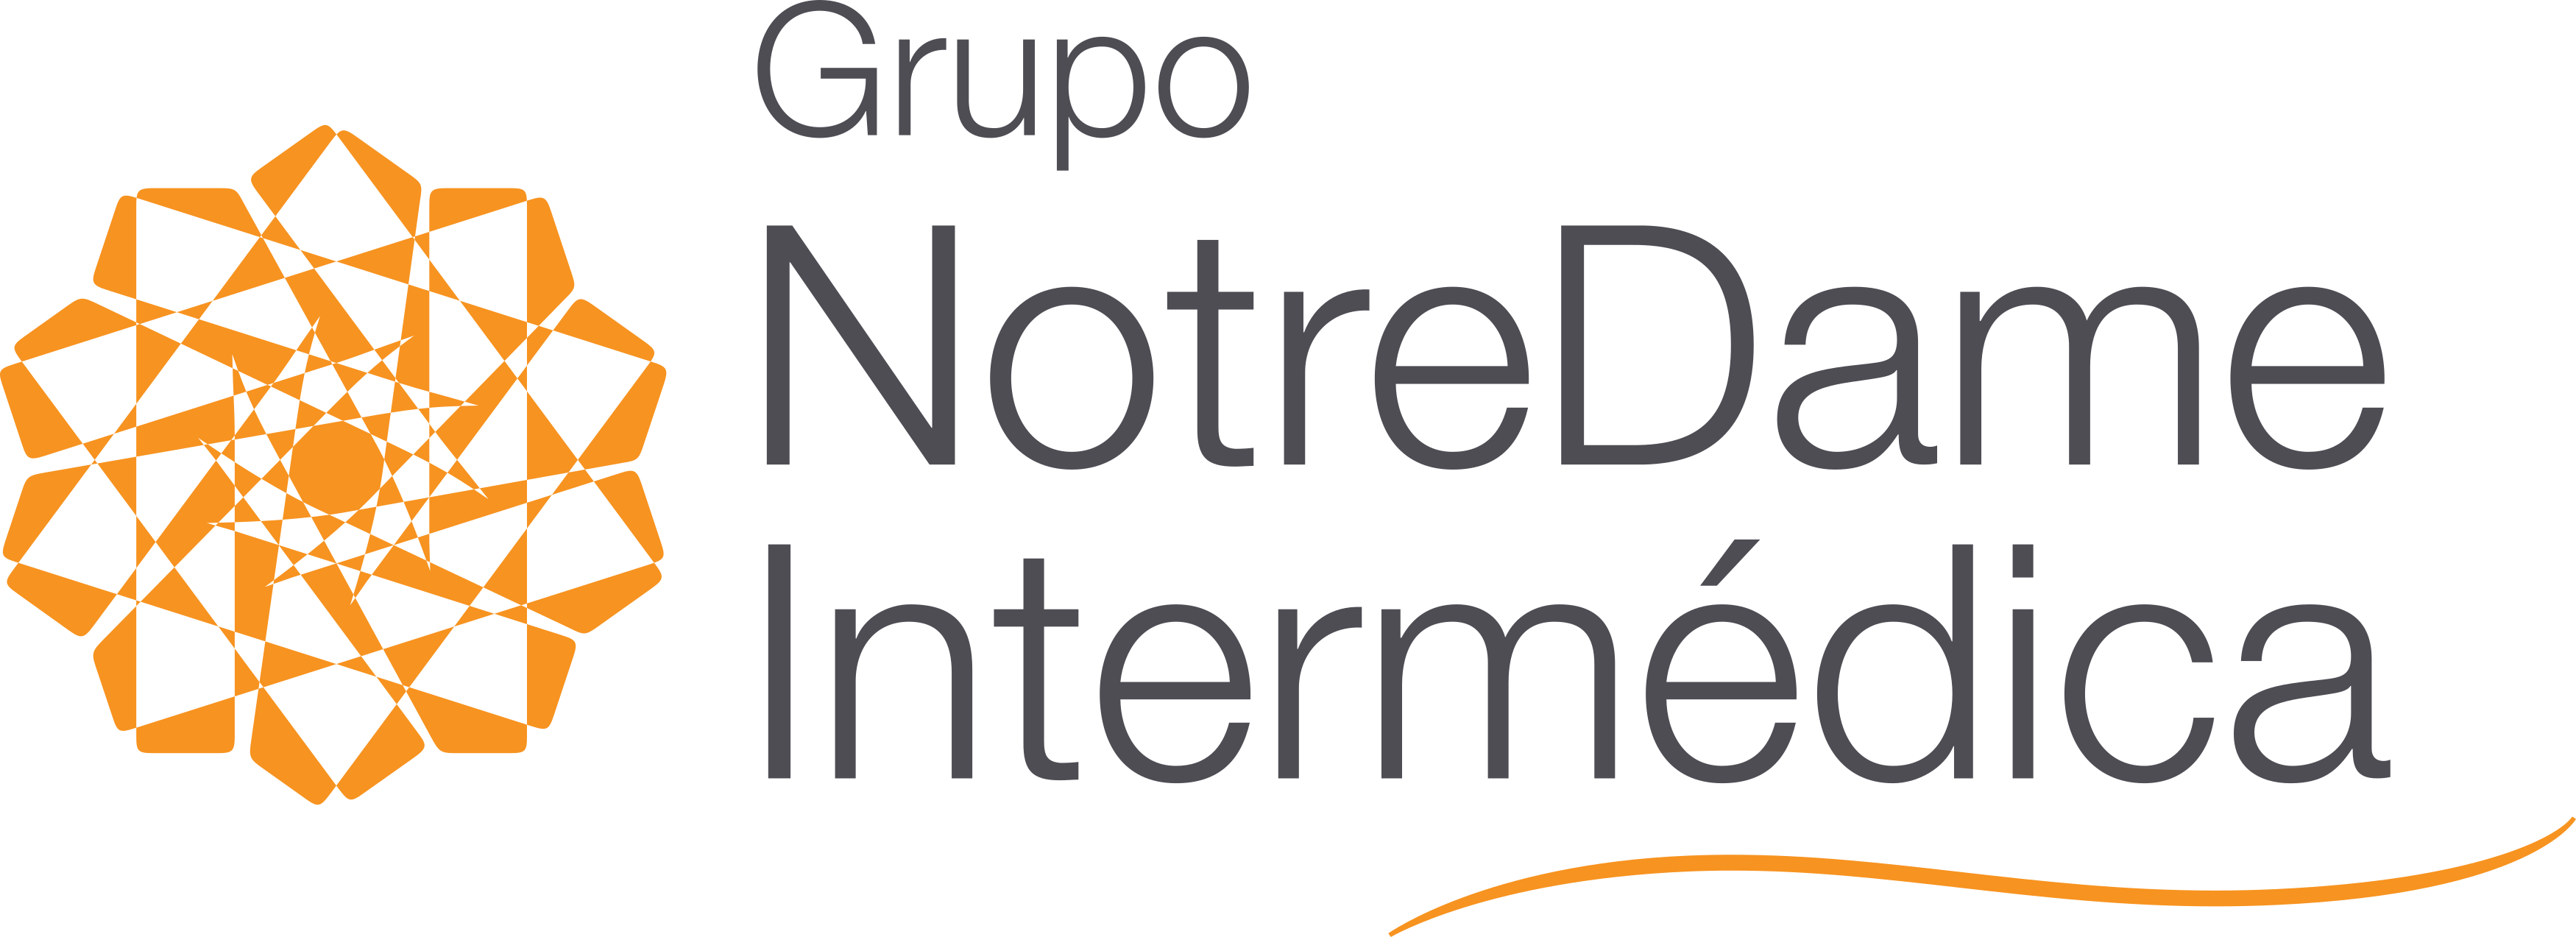 Grupo Notredame Intermédica Logo